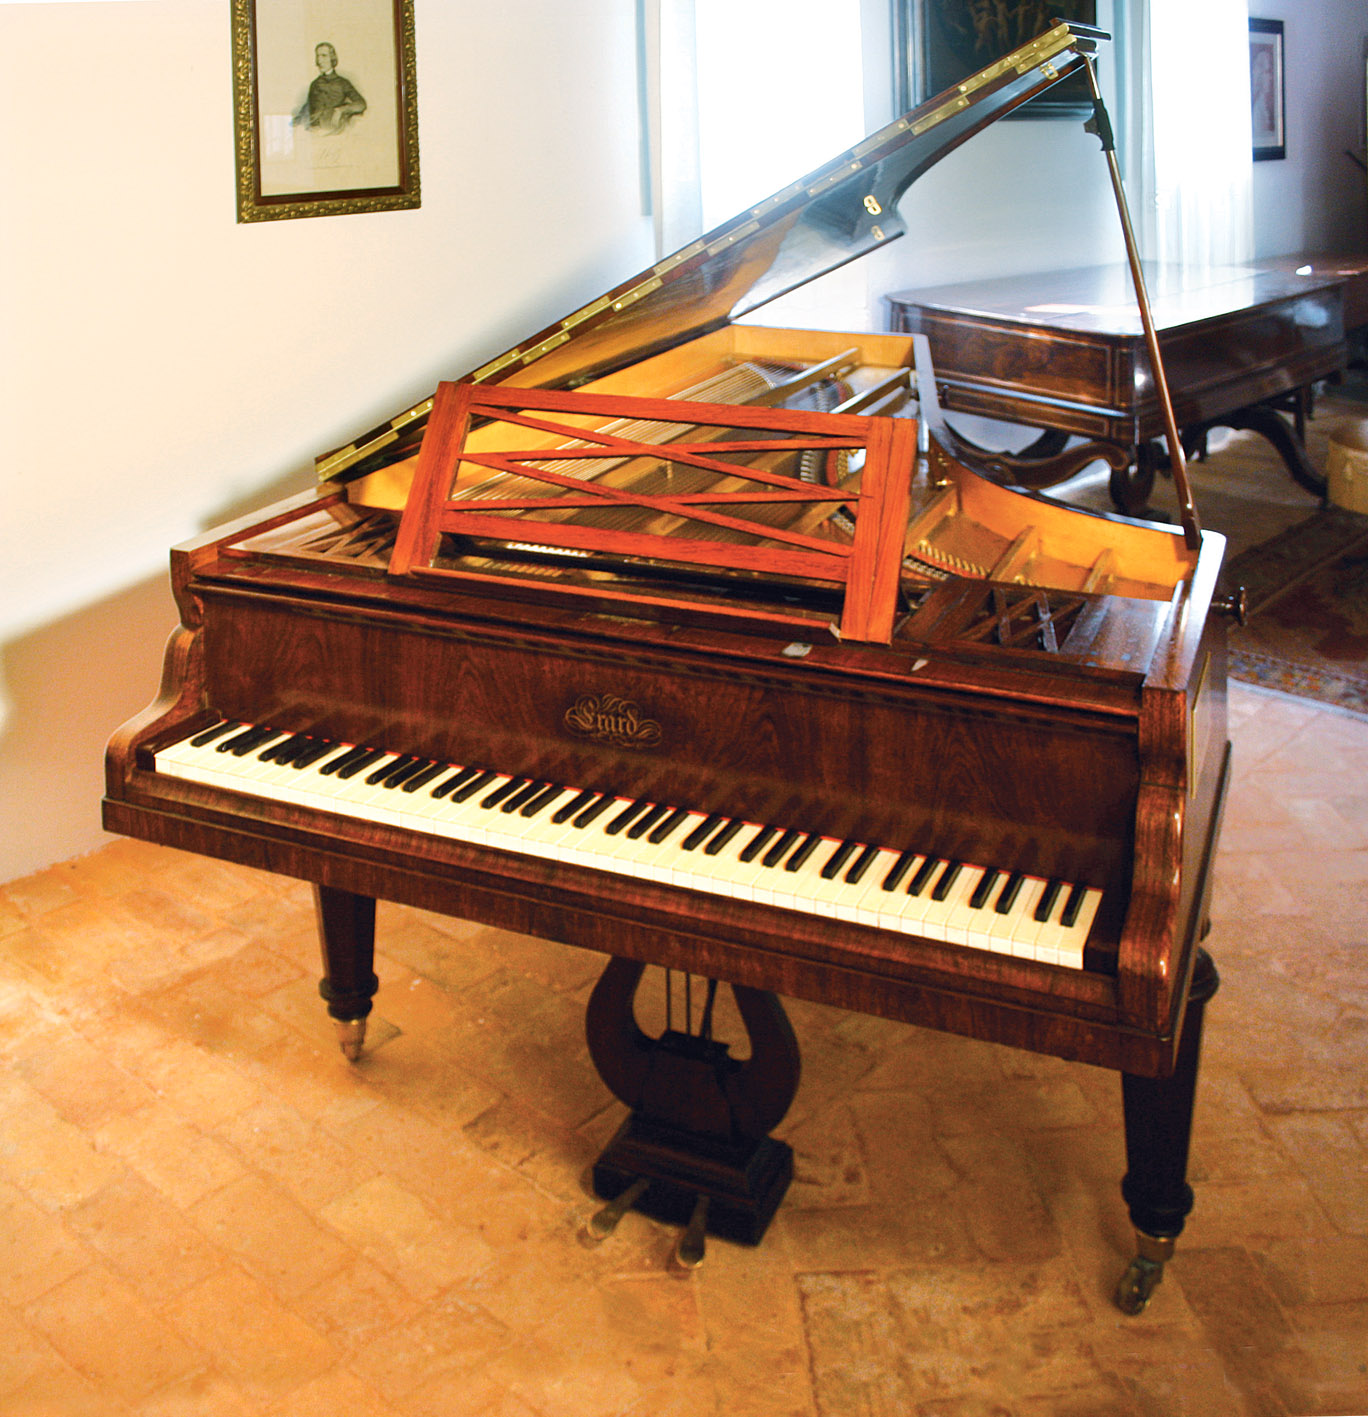 Vincenzo Petrali e il pianoforte: cronaca di un difficile compromesso